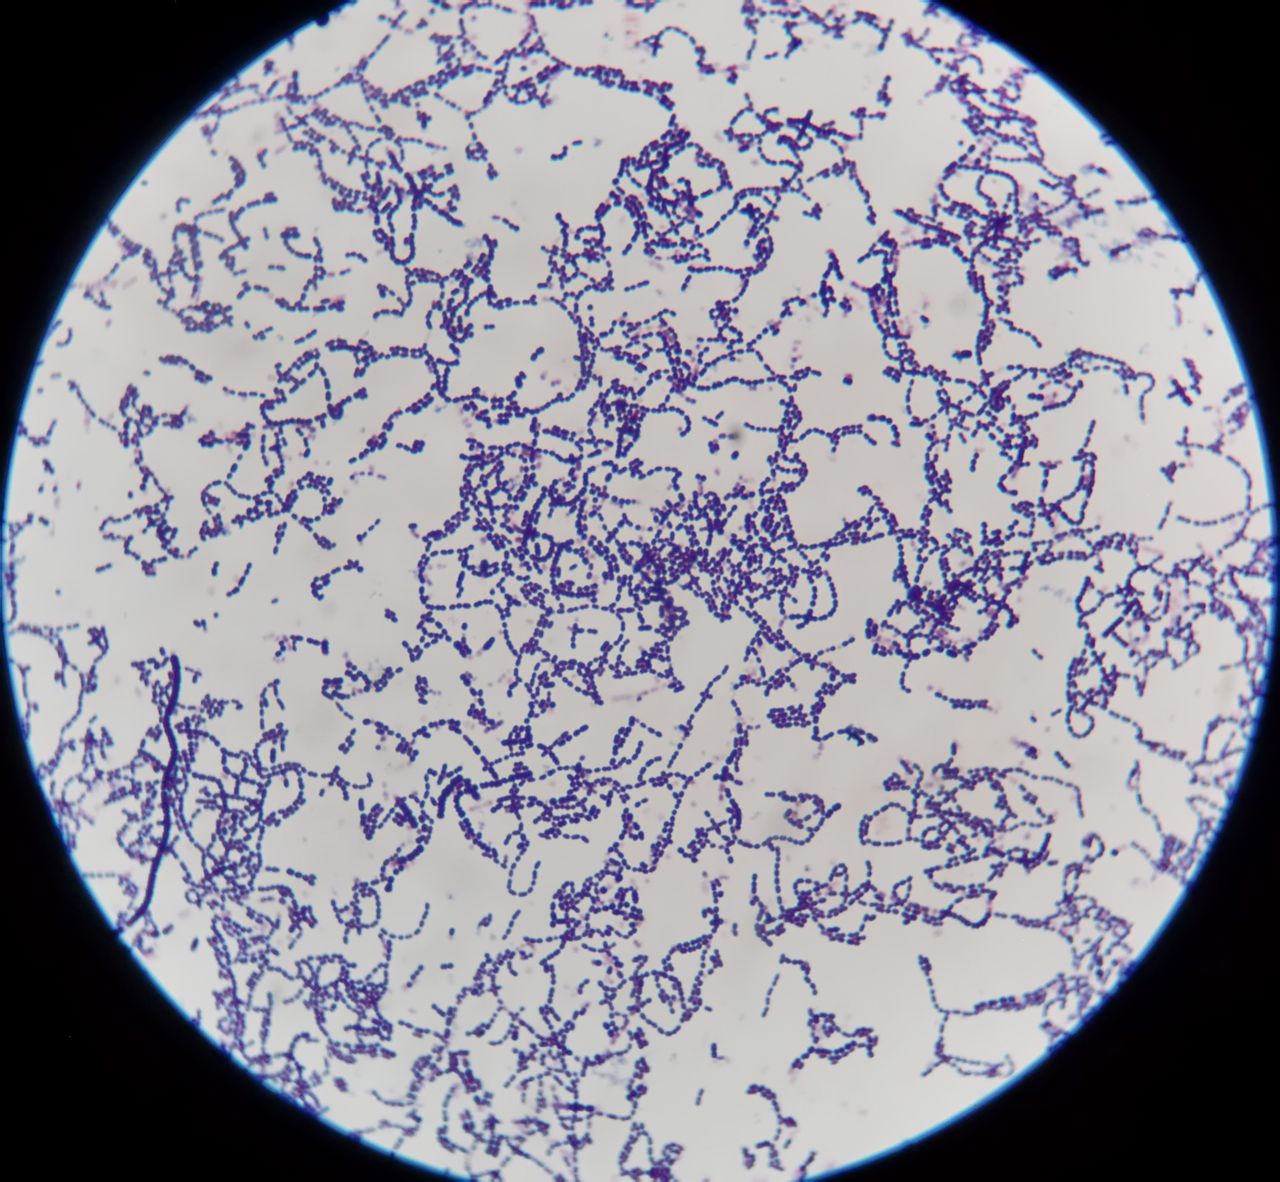 链杆菌显微镜下图片图片